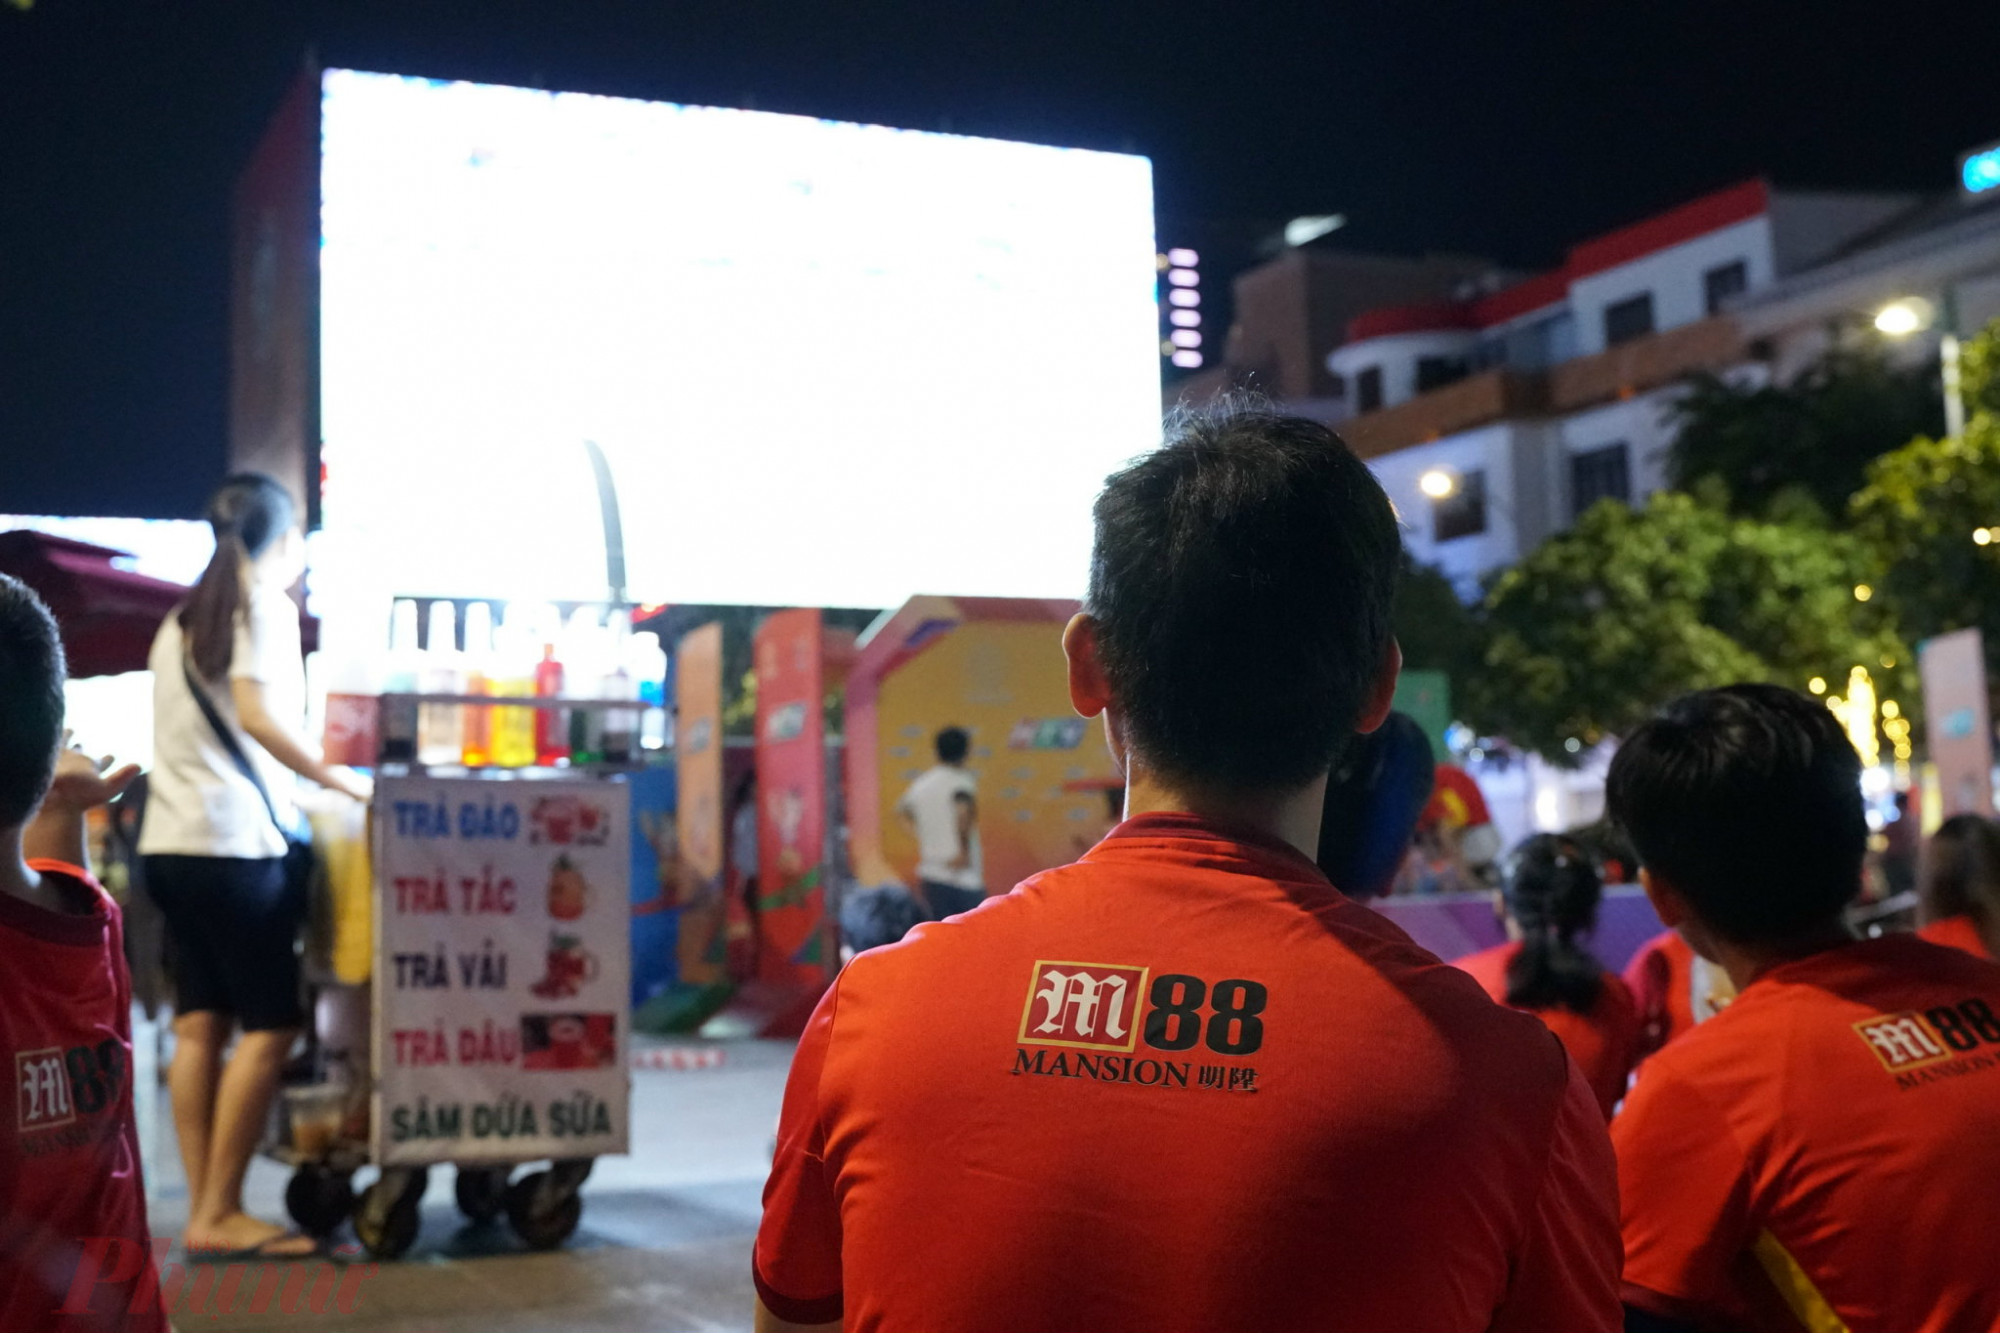  Trước đó, phố đi bộ đã được lắp đặt 5 màn hình LED cỡ lớn để phục vụ người hâm mộ xem các trận đấu của U23 Việt Nam tại SEA Games 31.